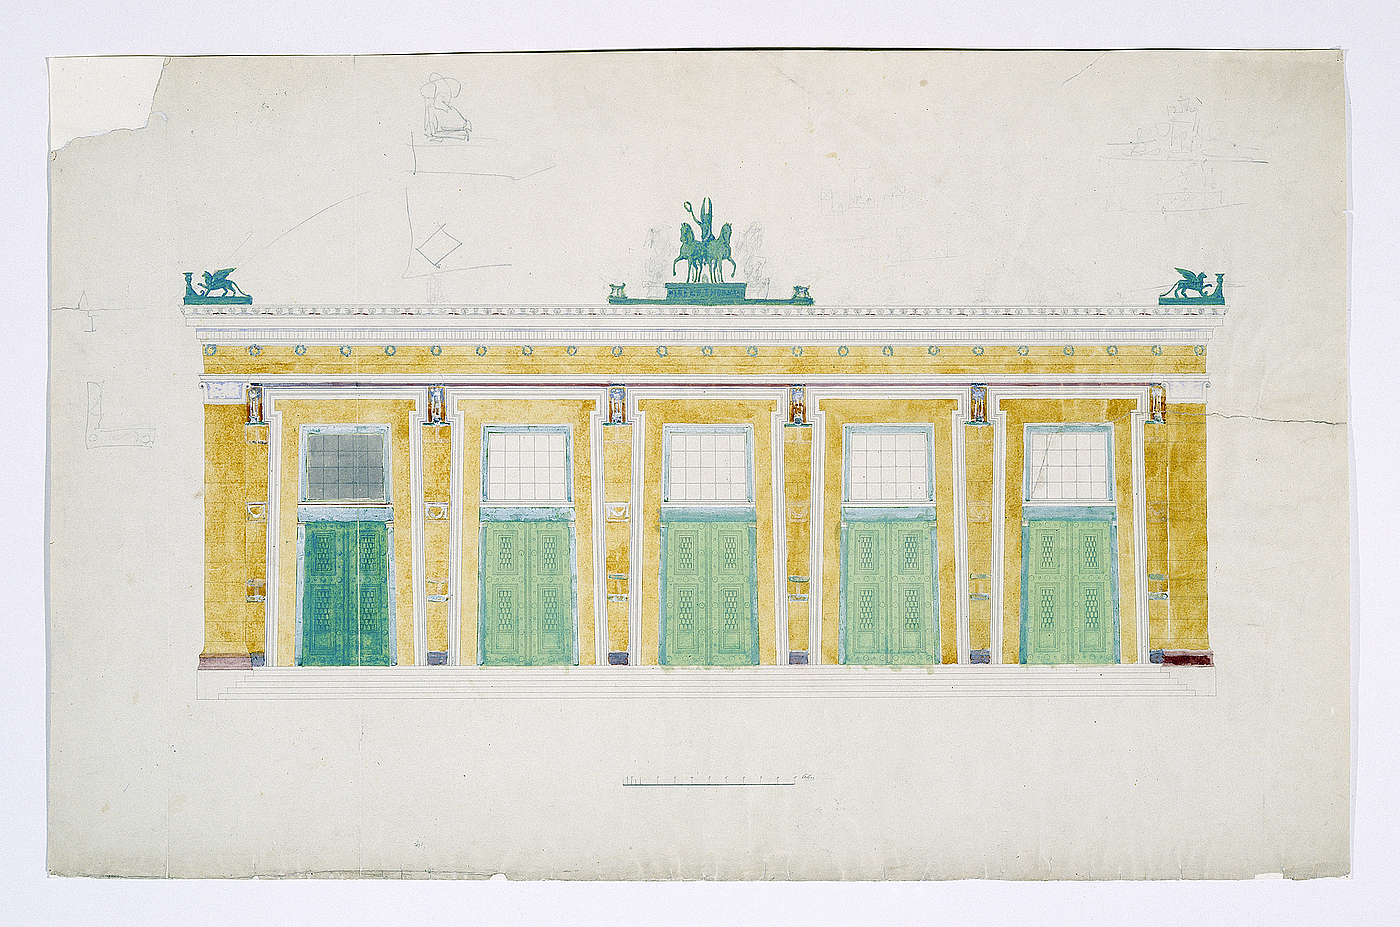 Michael Gottlieb Bindesbøll: Opstalt af Thorvaldsens Museums sydvestlige facade, formodentlig 1840rne